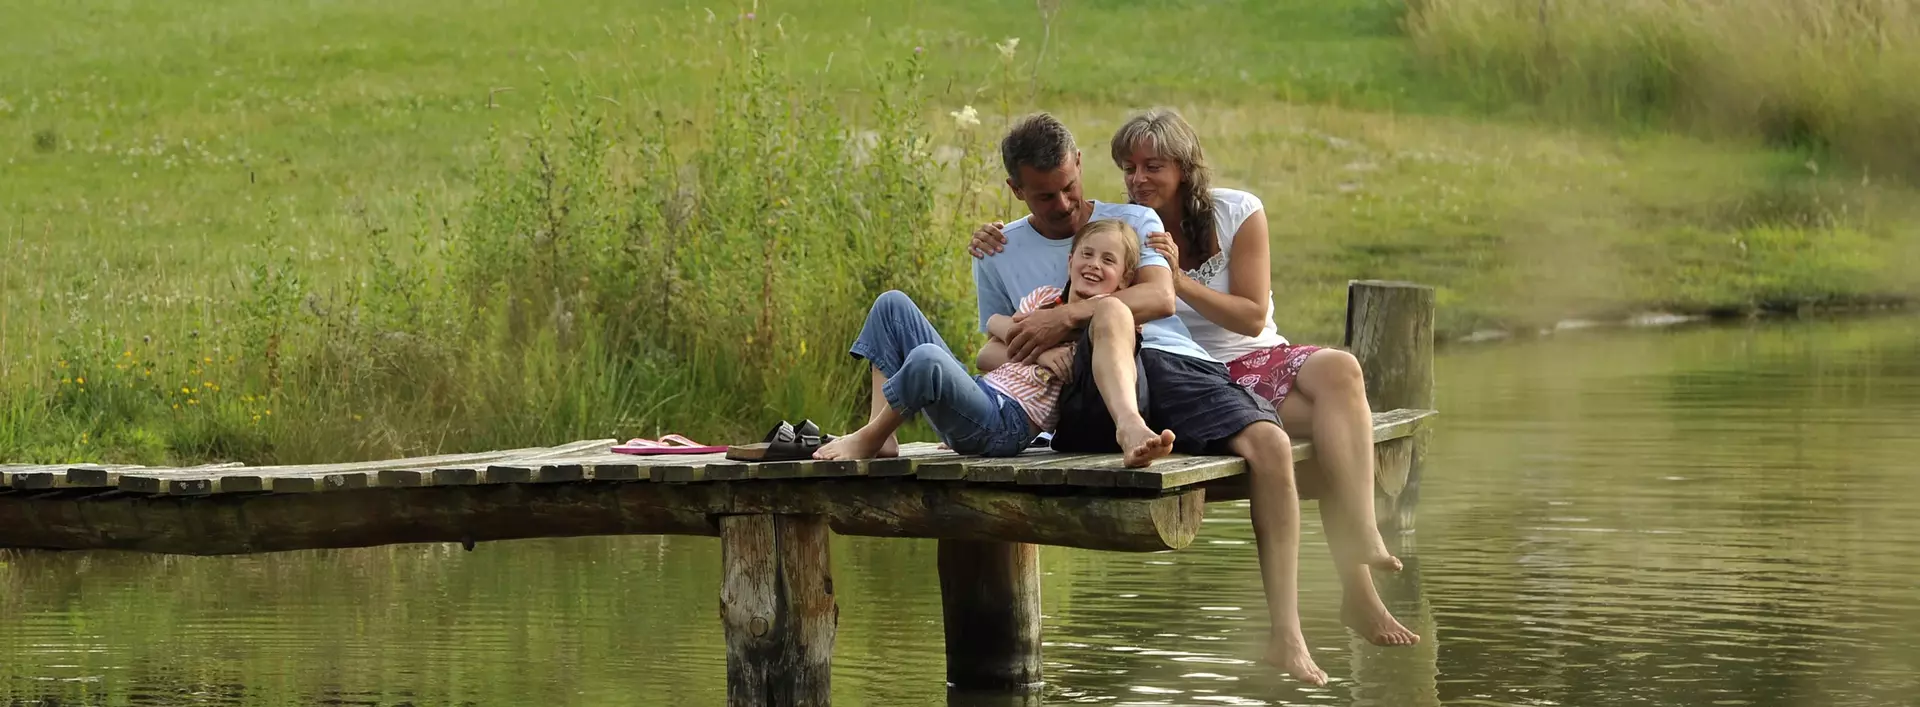 Familienurlaub: Familie genießt gemeinsame Zeit am See